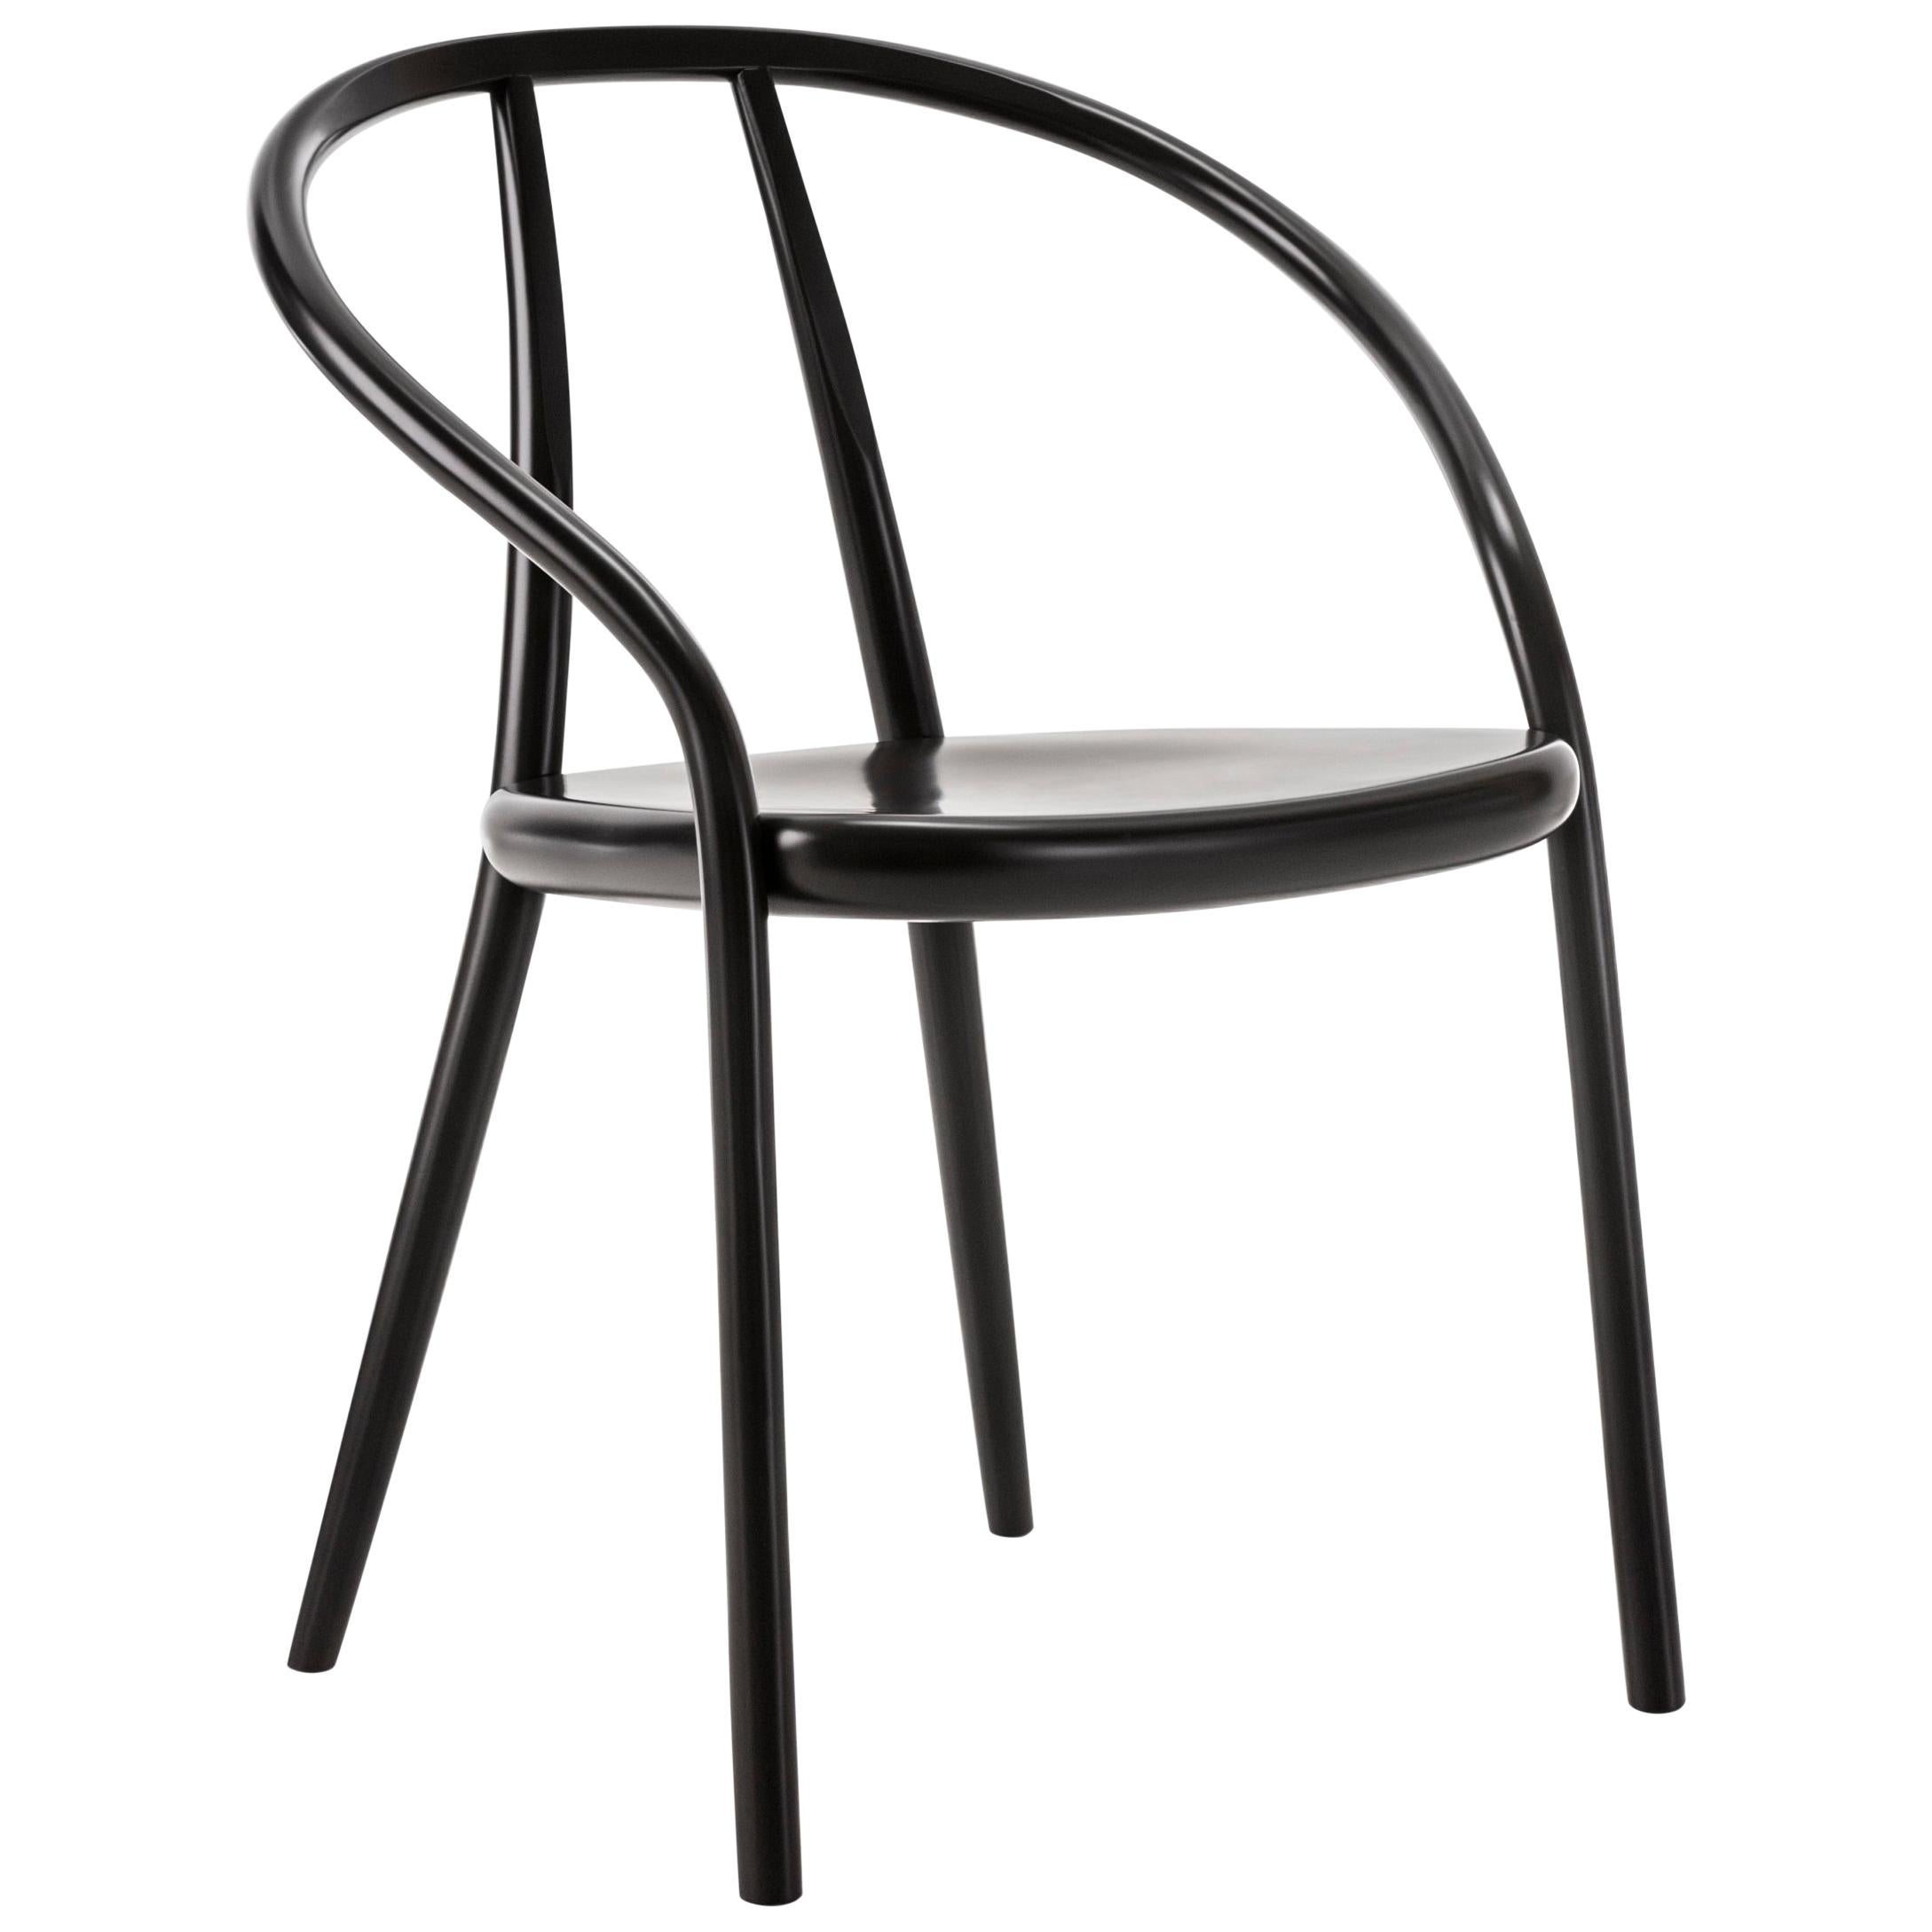 Gebrüder Thonet Vienna GmbH Gustav Chair in Black with Plywood Seat